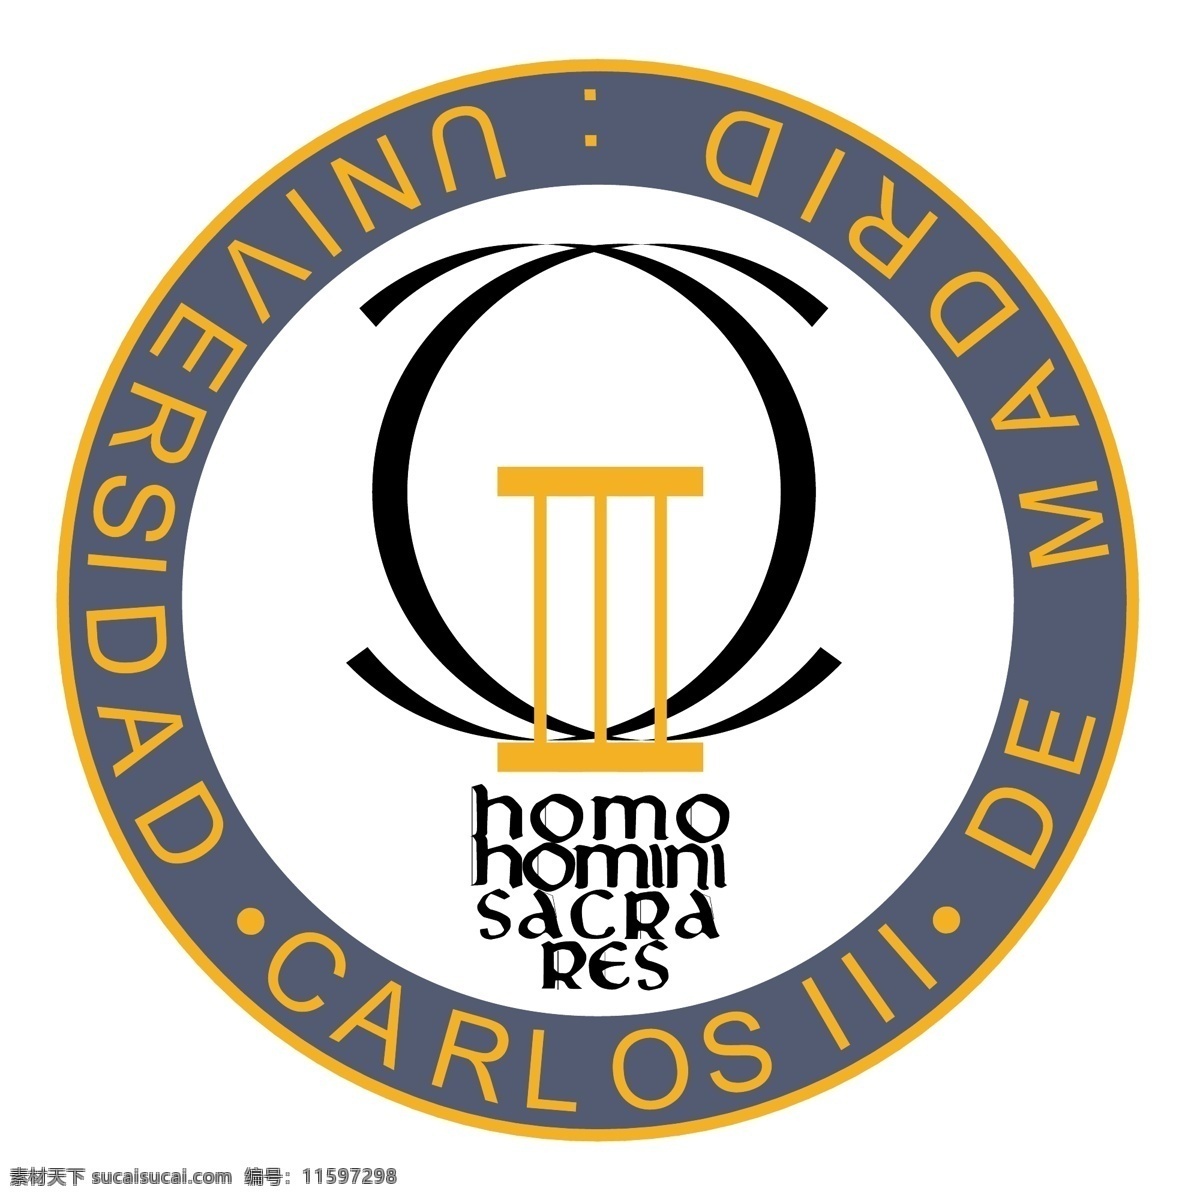 马德里 卡洛斯 iii 大学 免费 标志 自由 psd源文件 logo设计